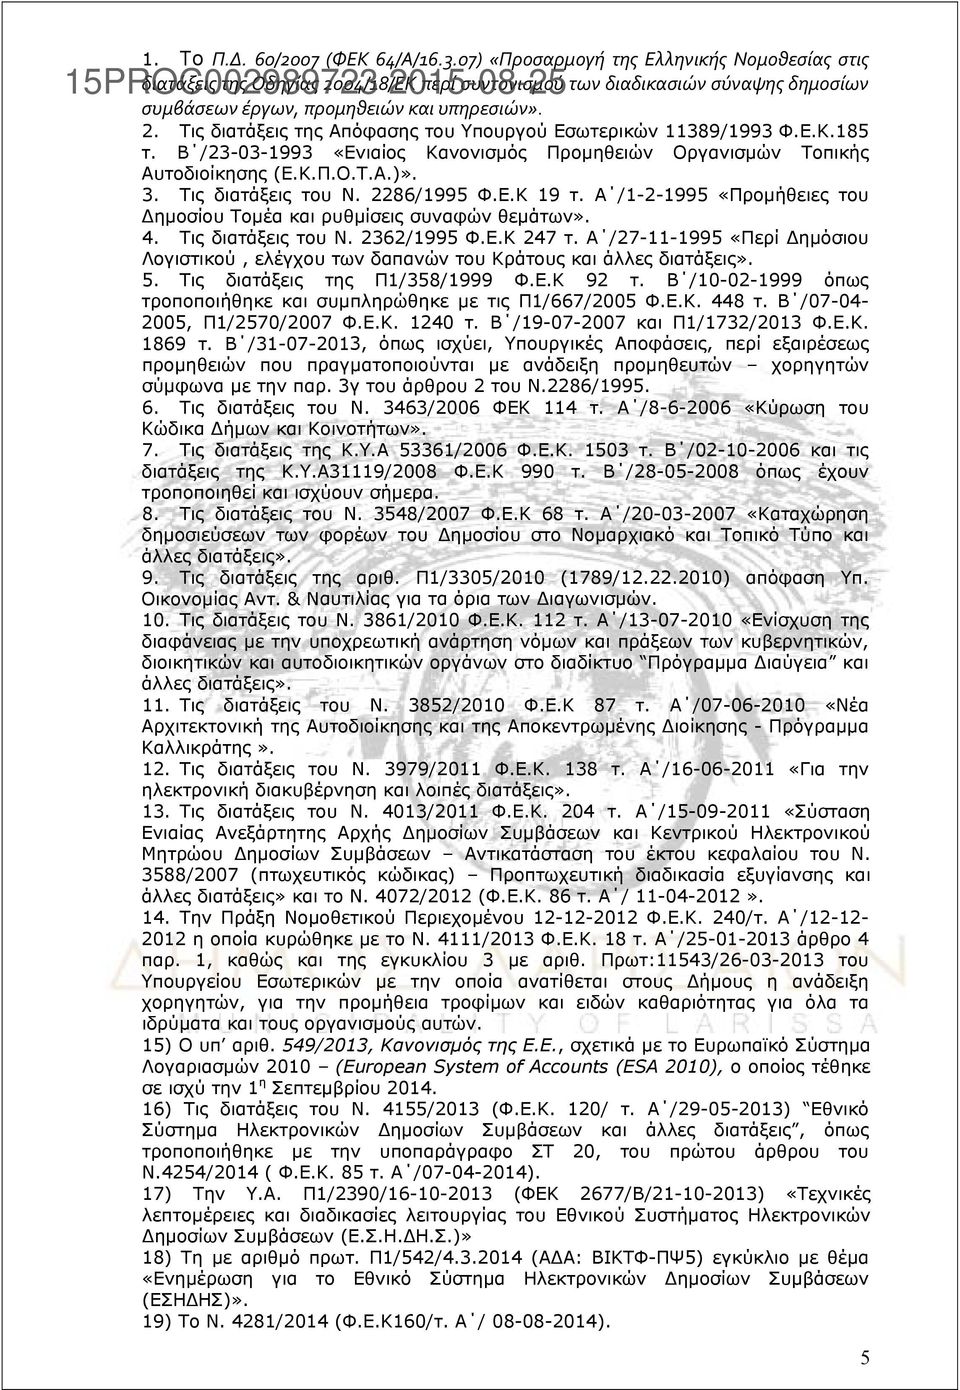 Ε.Κ.185 τ. Β /23-03-1993 «Ενιαίος Κανονισμός Προμηθειών Οργανισμών Τοπικής Αυτοδιοίκησης (Ε.Κ.Π.Ο.Τ.Α.)». 3. Τις διατάξεις του Ν. 2286/1995 Φ.Ε.Κ 19 τ.